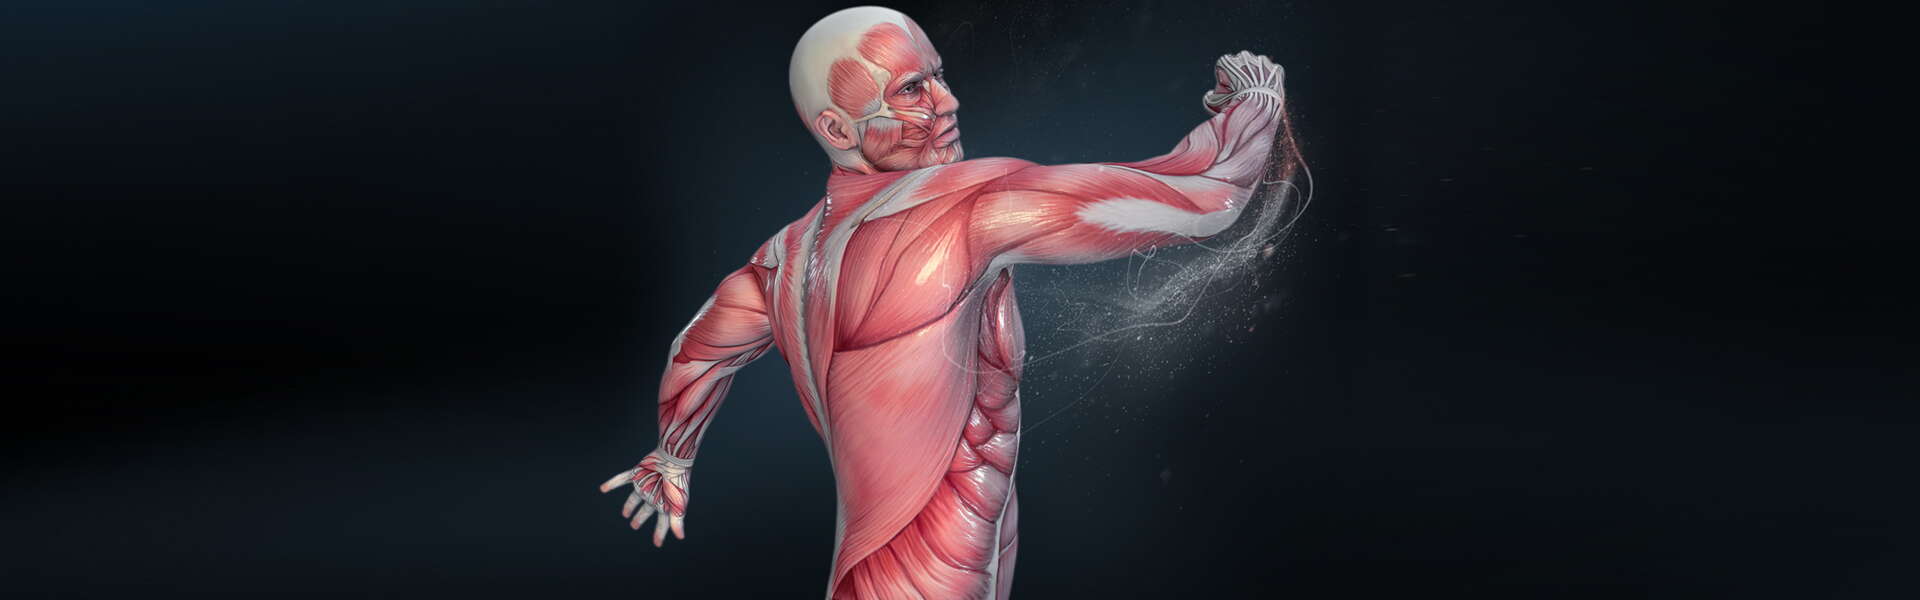 I vari tipi di Forza Muscolare: descrizione dettagliata